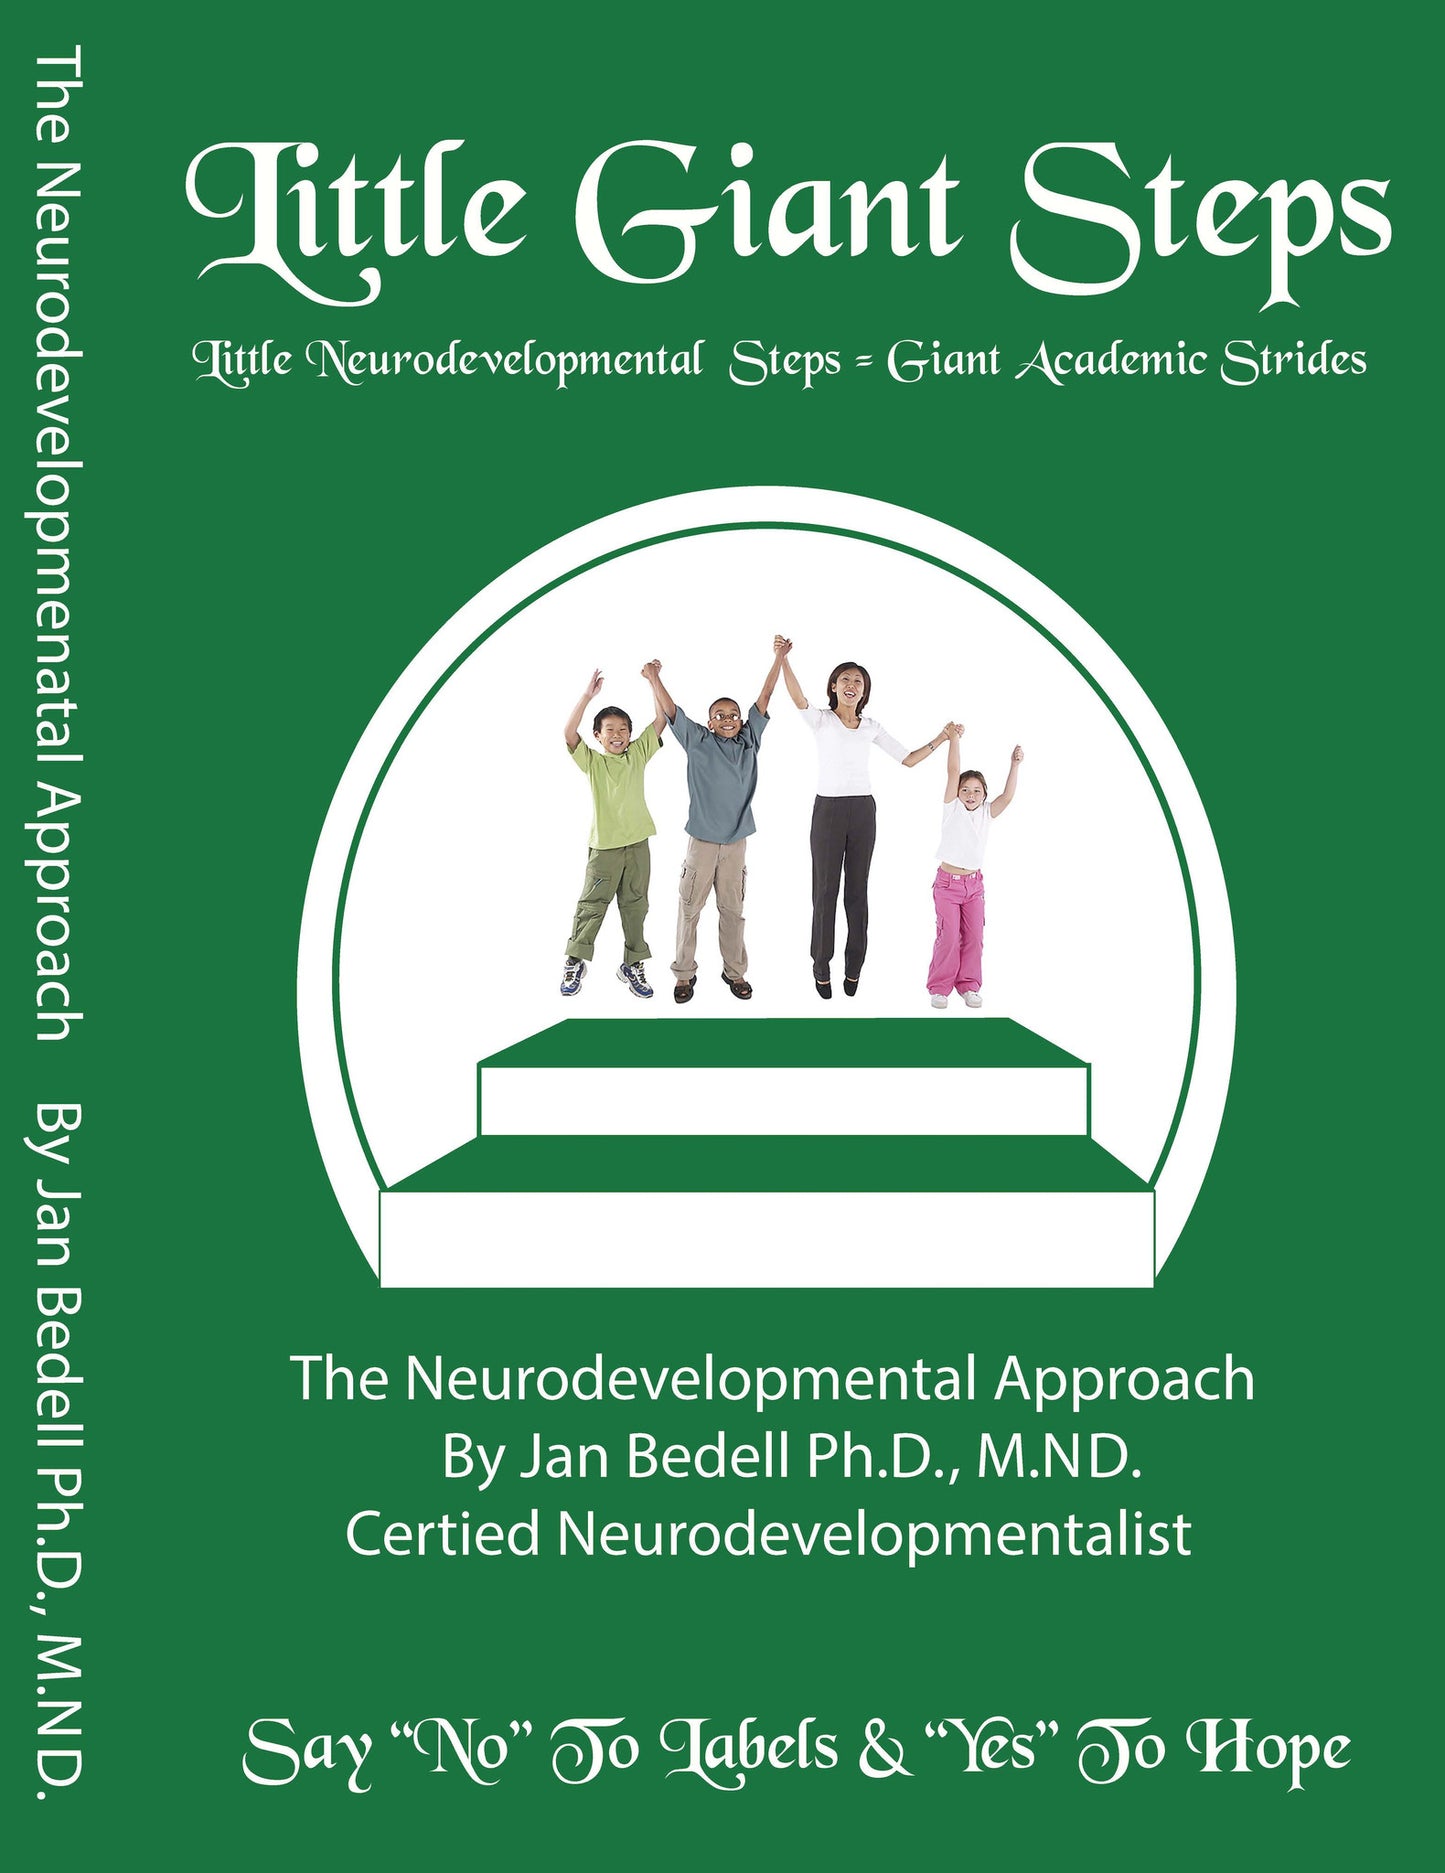 The NeuroDevelopmental Approach Seminar - Download